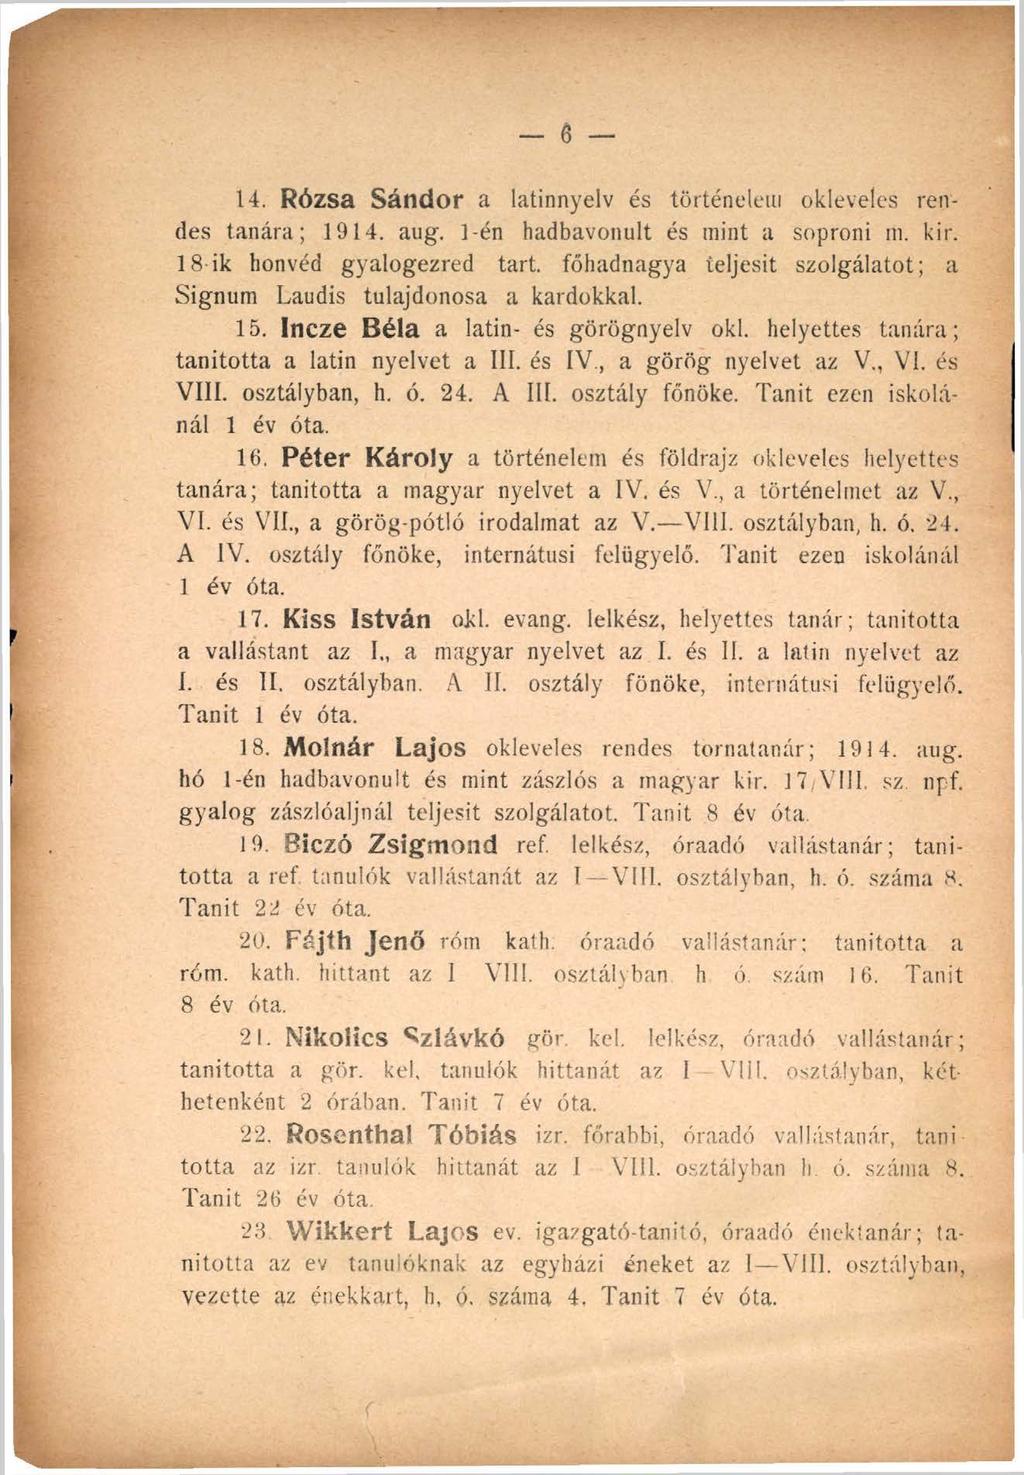 14. Rózsa Sándor a latinnyelv és történelem okleveles rendes tanára; 1914. aug. 1-én hadbavonult és mint a soproni m. kir. 18 ik honvéd gyalogezred tart.